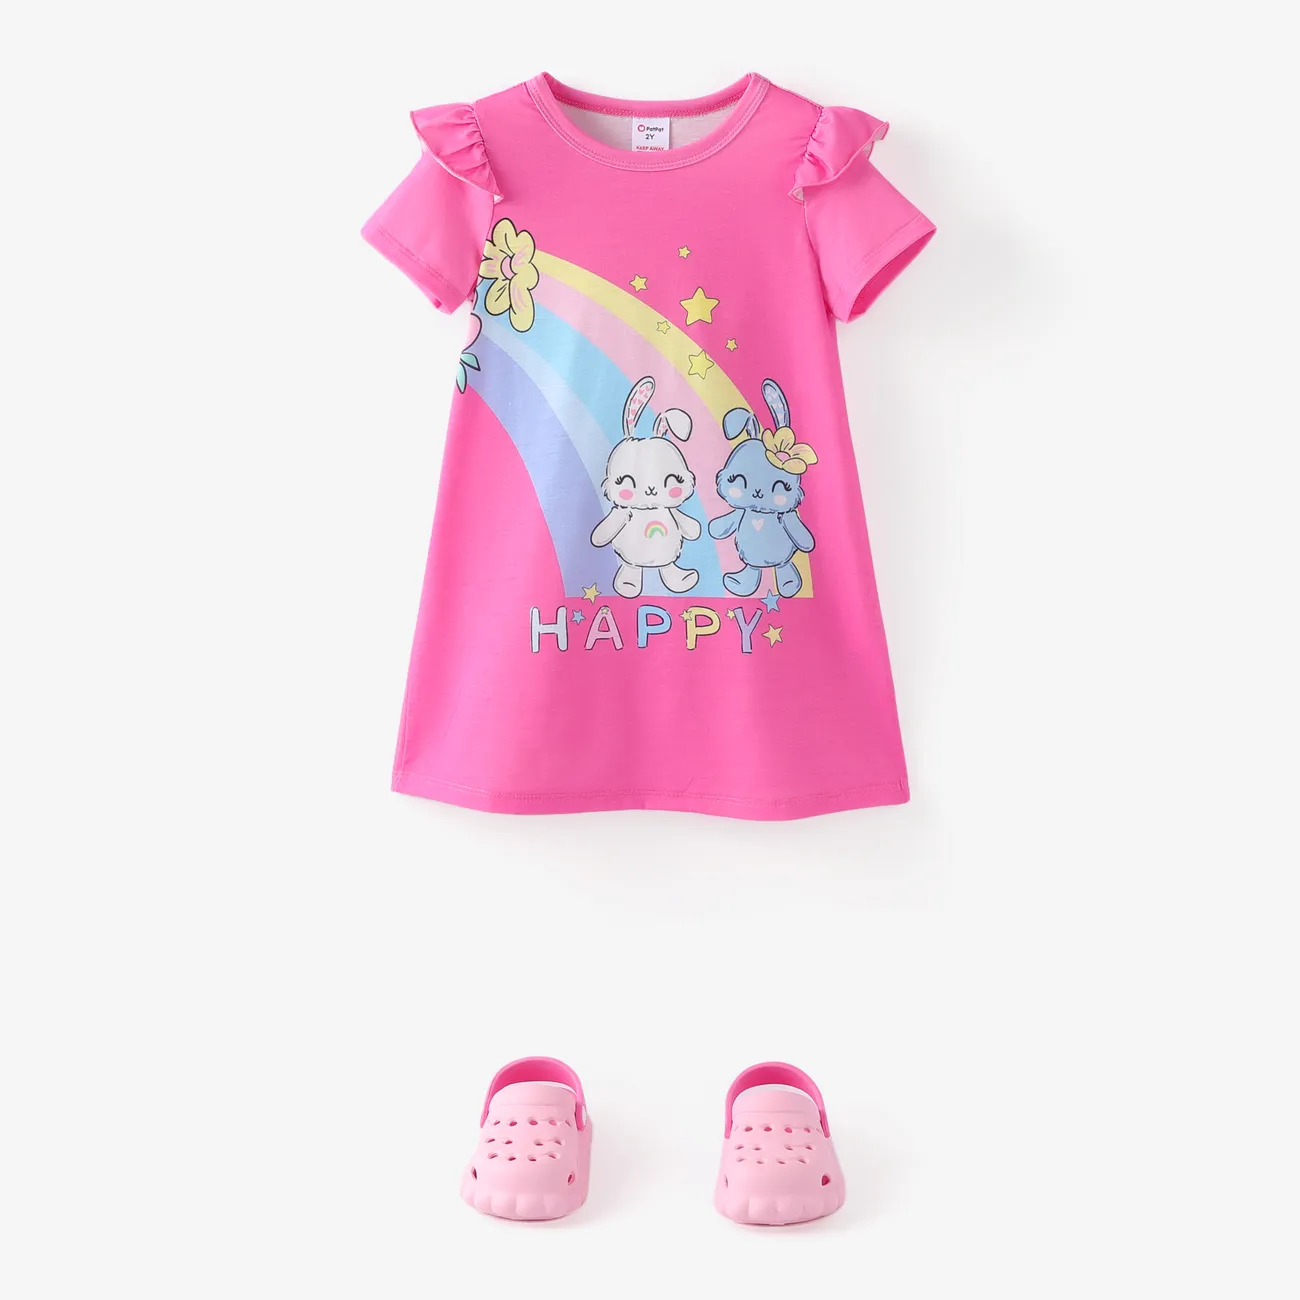 Kleinkind / Kind Mädchen Tier Print Flatterärmel Kleid Pyjama Fuchsie big image 1